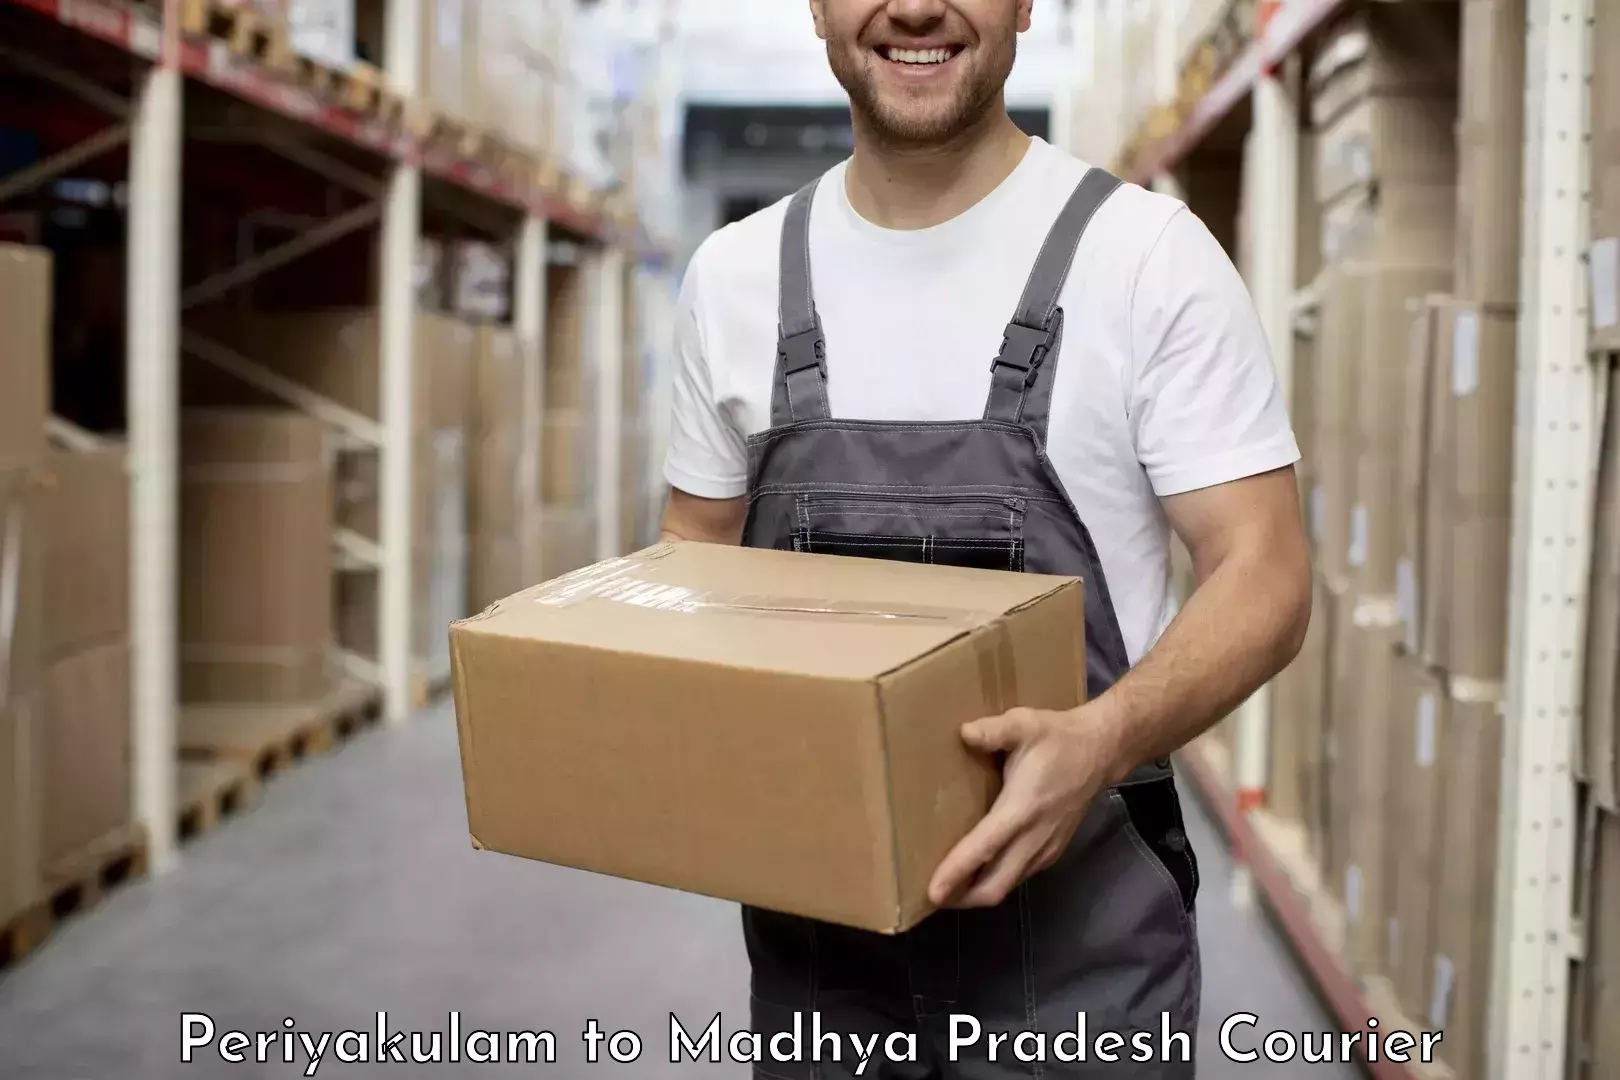 Modern courier technology Periyakulam to Khandwa